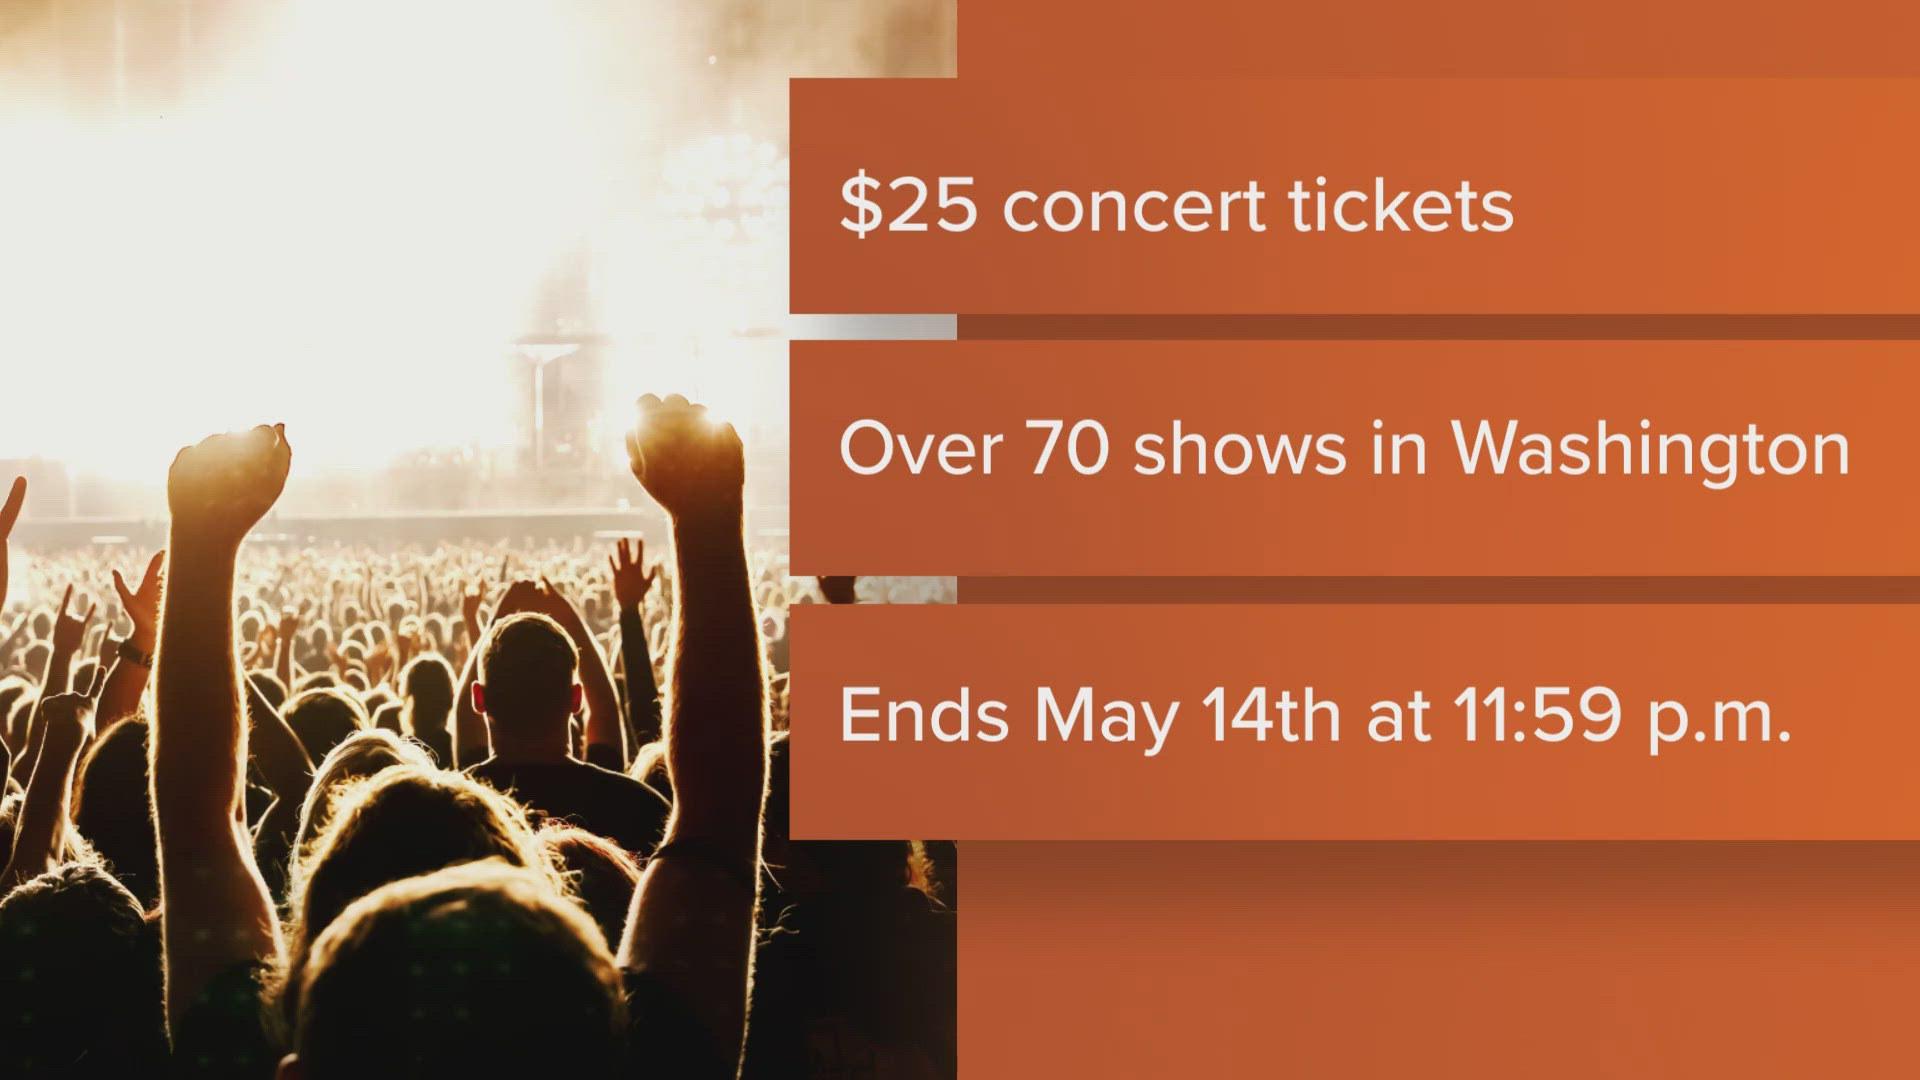 Find concert tickets online